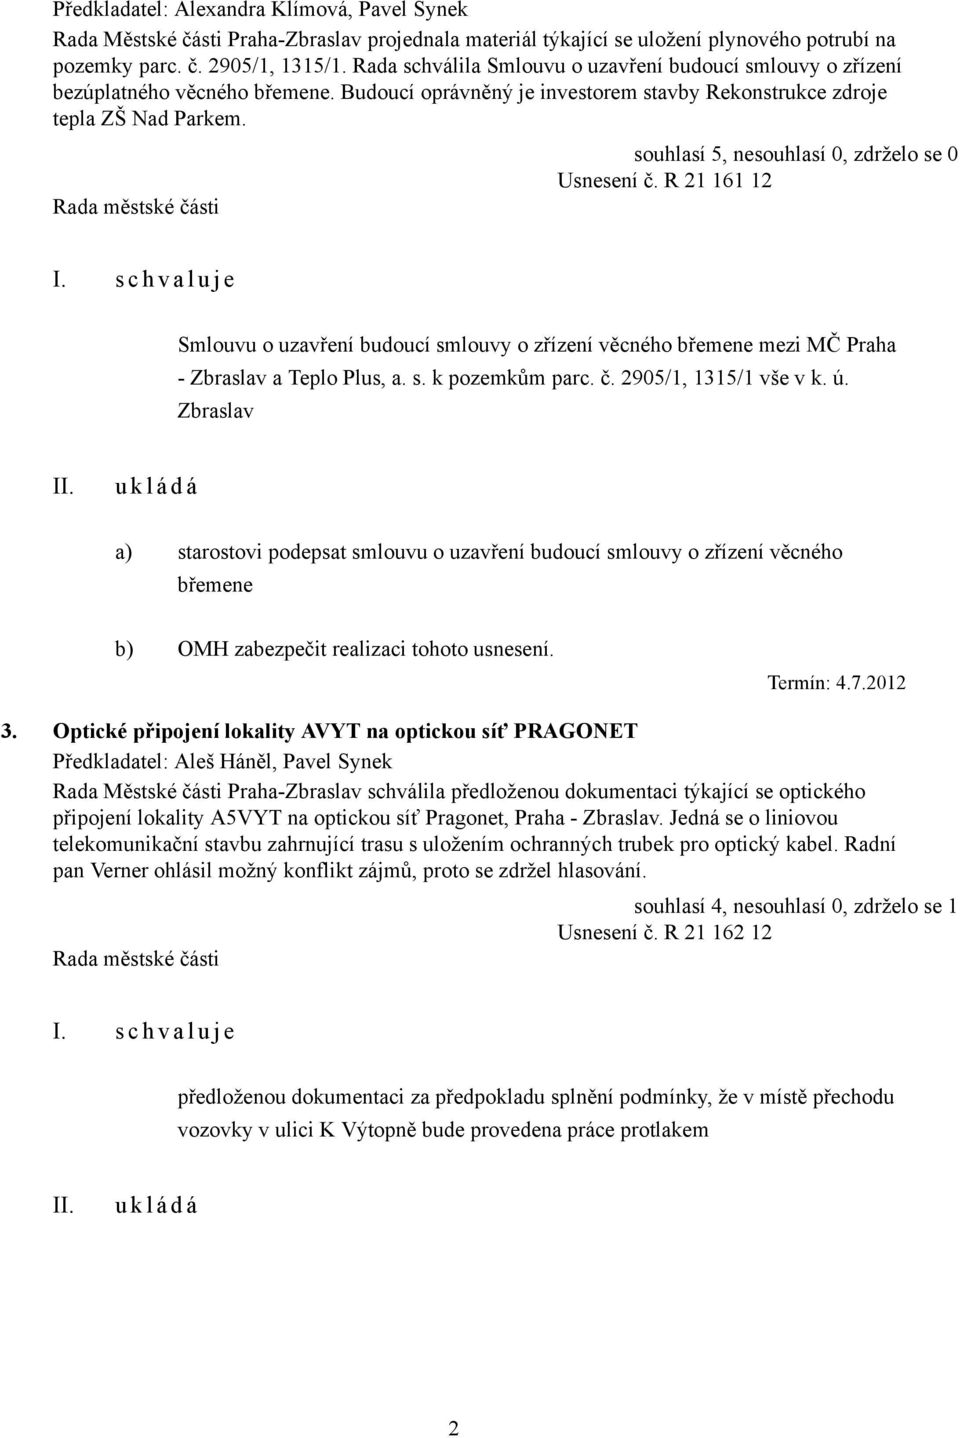 R 21 161 12 Smlouvu o uzavření budoucí smlouvy o zřízení věcného břemene mezi MČ Praha - Zbraslav a Teplo Plus, a. s. k pozemkům parc. č. 2905/1, 1315/1 vše v k. ú.